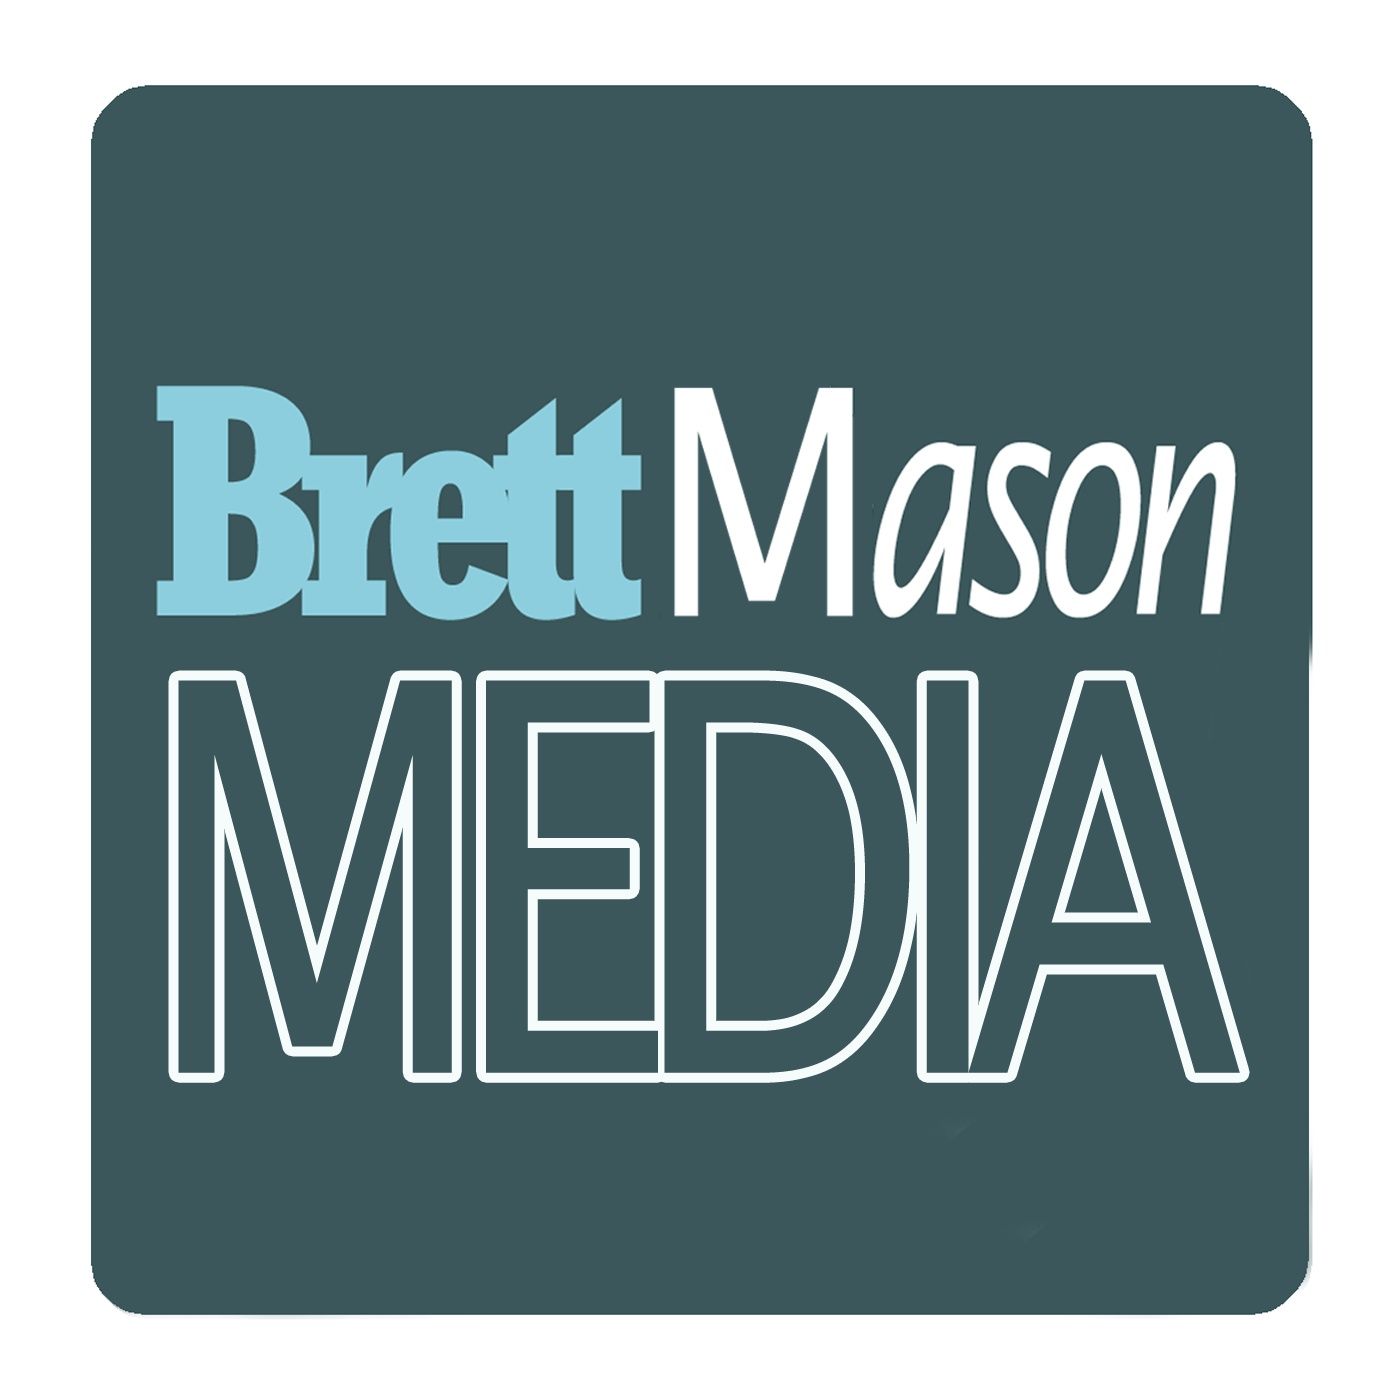 Brett Mason Media